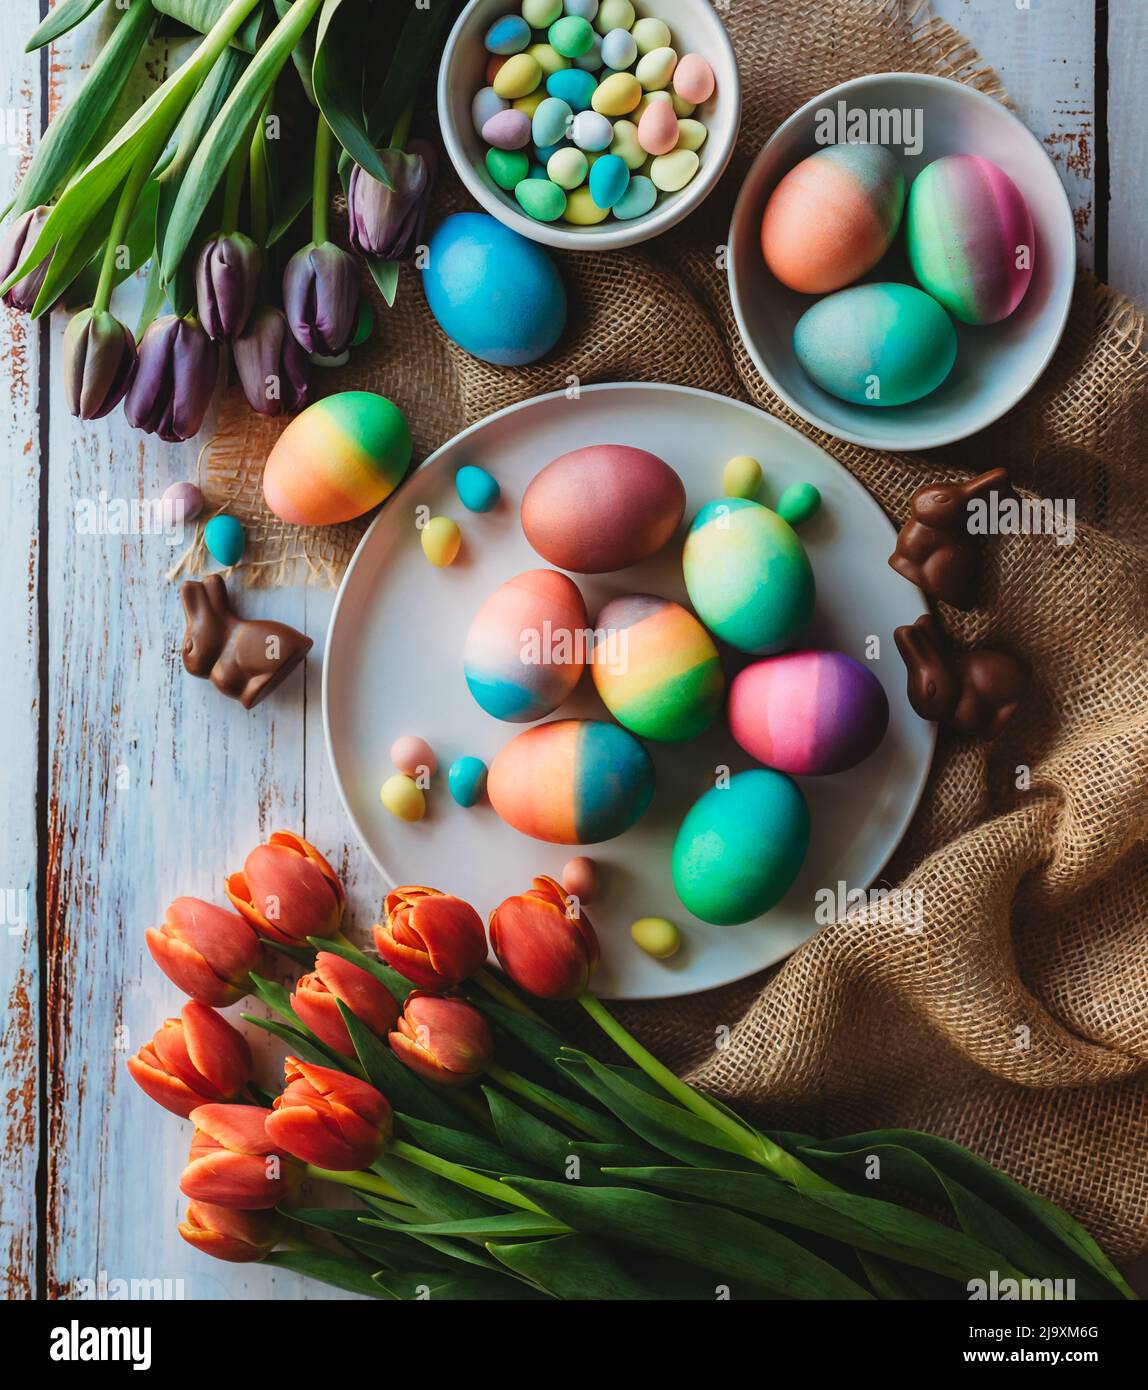 Assortiment d'œufs de pâques aux couleurs vives entourés de tulipes. Banque D'Images